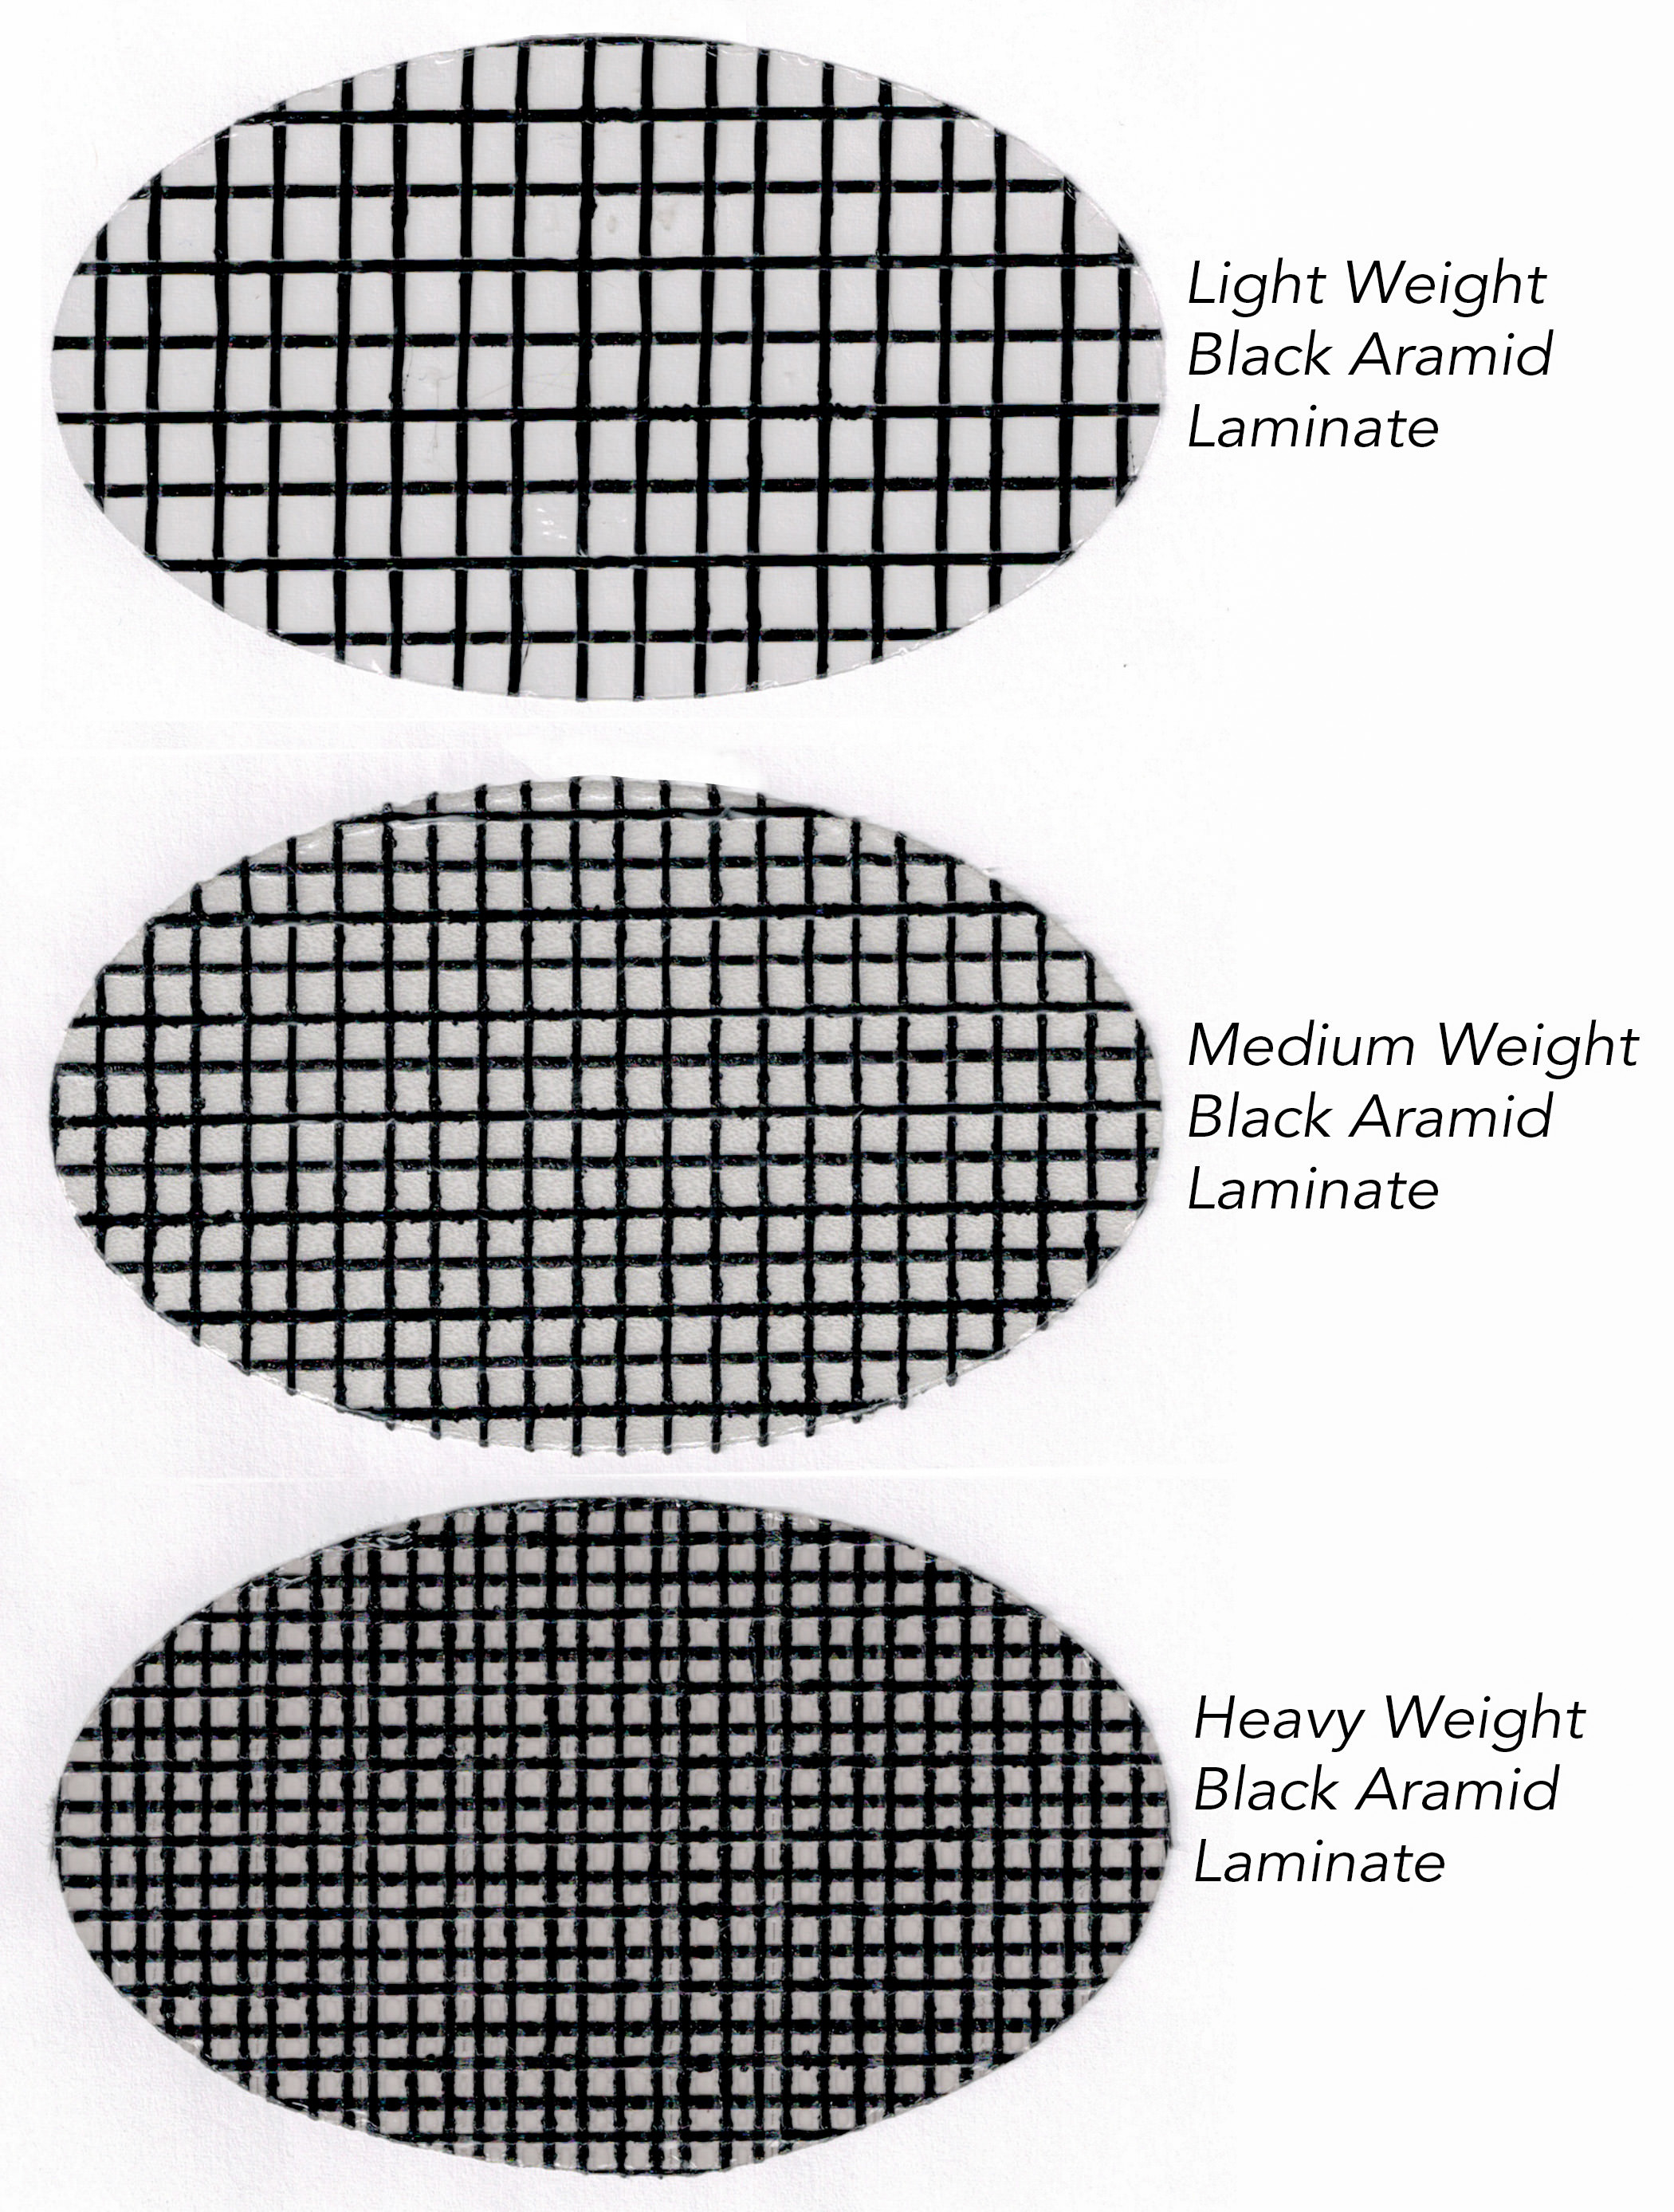 Drei verschiedene Gewichte von schwarzem Aramidlaminat von Dimension Polyant für Tape-Drive-Segel. Das leichte Material wird für kleine Boote oder Leichtwind-Genua verwendet. Das mittelschwere Laminat kann für Großsegel bis zu 45 Fuß verwendet werden, während das hea...